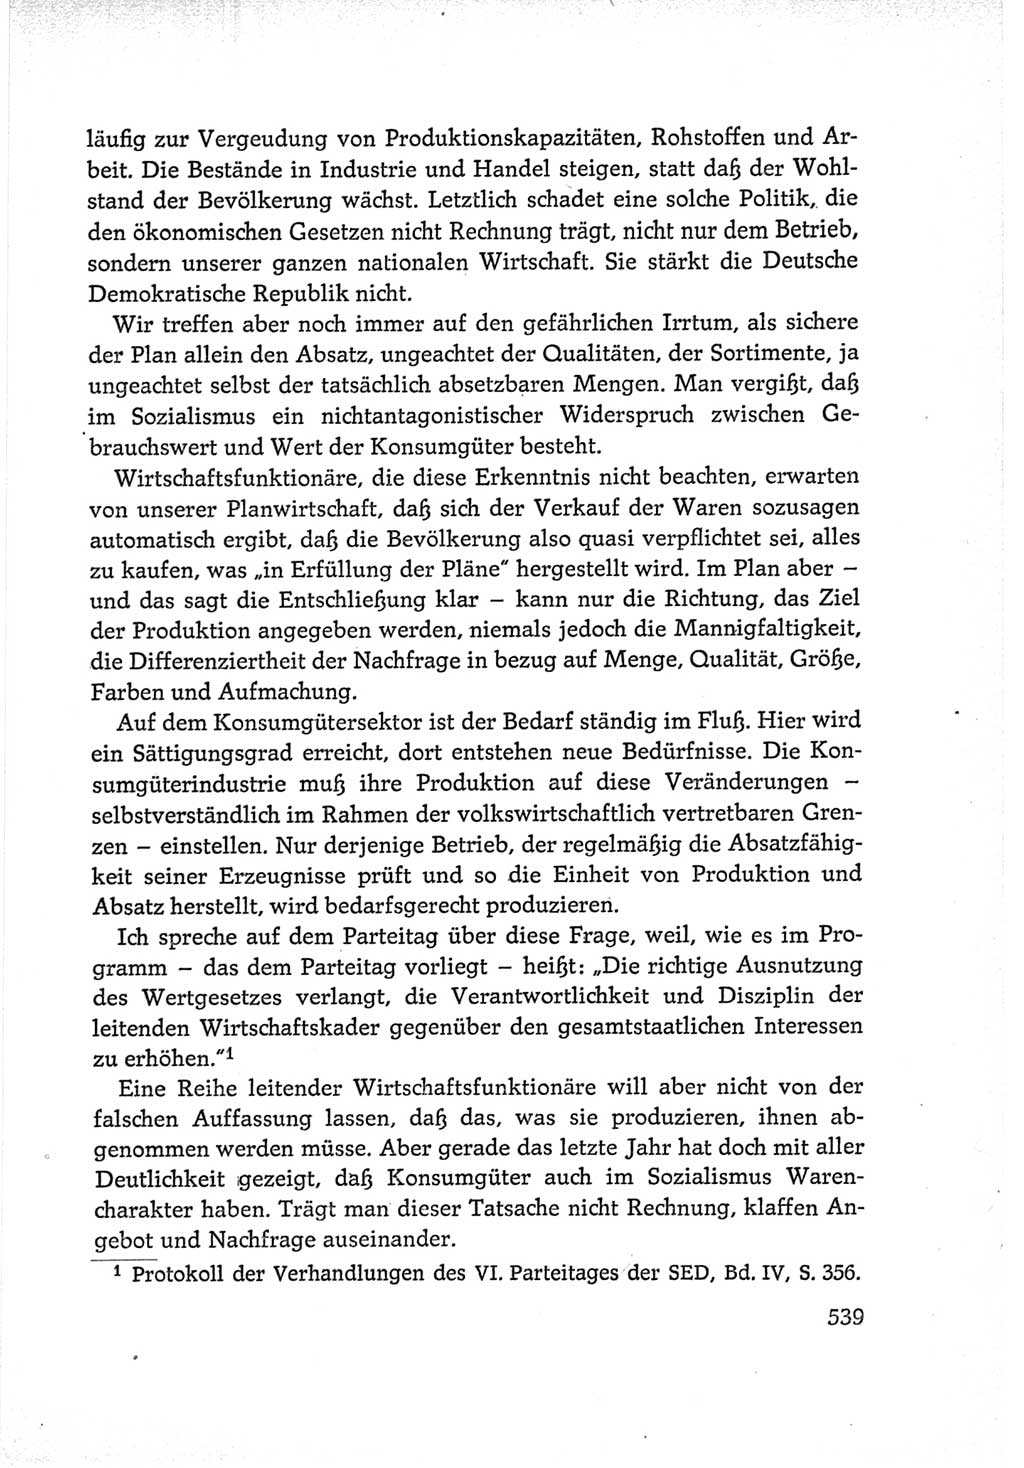 Protokoll der Verhandlungen des Ⅵ. Parteitages der Sozialistischen Einheitspartei Deutschlands (SED) [Deutsche Demokratische Republik (DDR)] 1963, Band Ⅰ, Seite 539 (Prot. Verh. Ⅵ. PT SED DDR 1963, Bd. Ⅰ, S. 539)